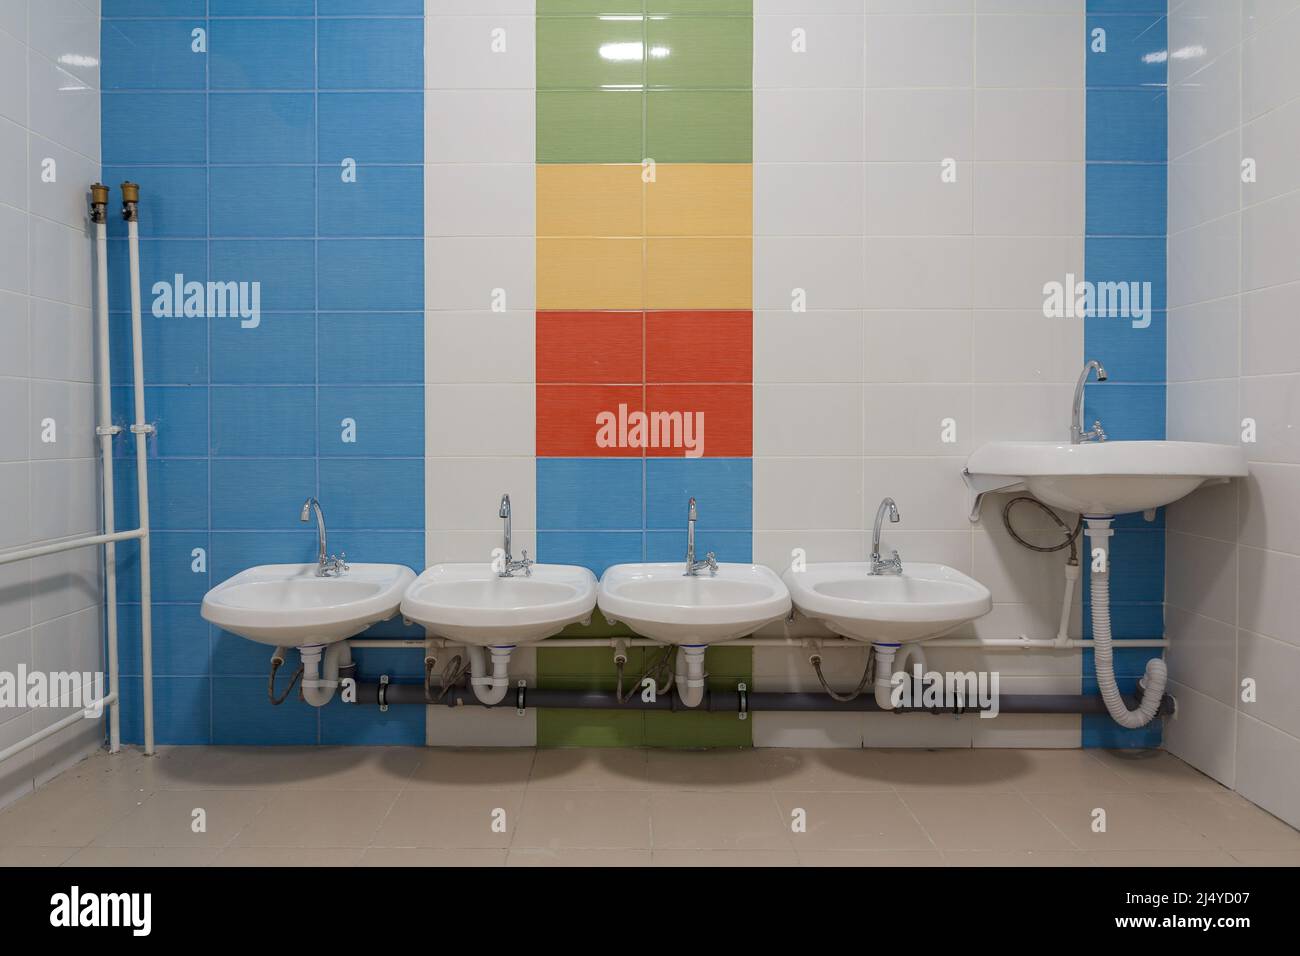 Toilettes dans la maternelle. Petits éviers pour se laver les mains dans  les toilettes de la maternelle Photo Stock - Alamy